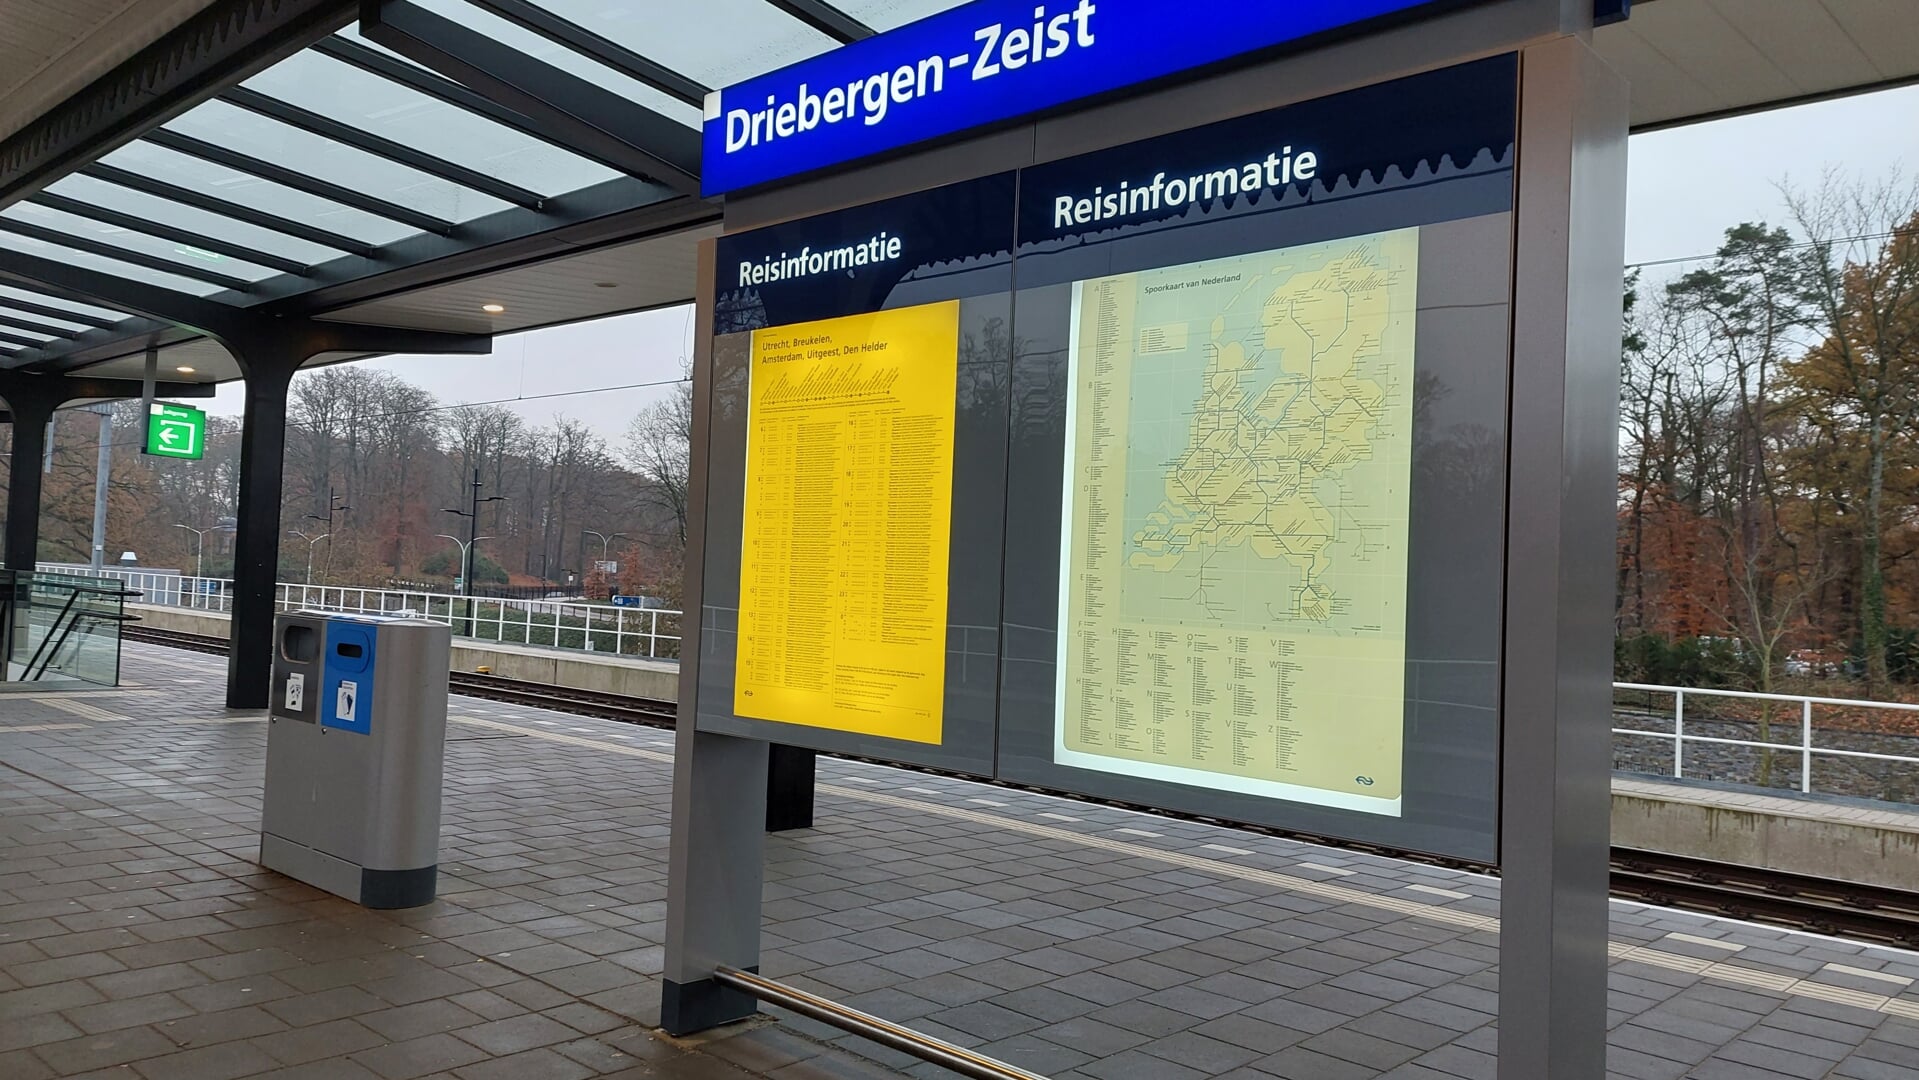 Rond station Driebergen-Zeist komt een nieuwe woonwijk.